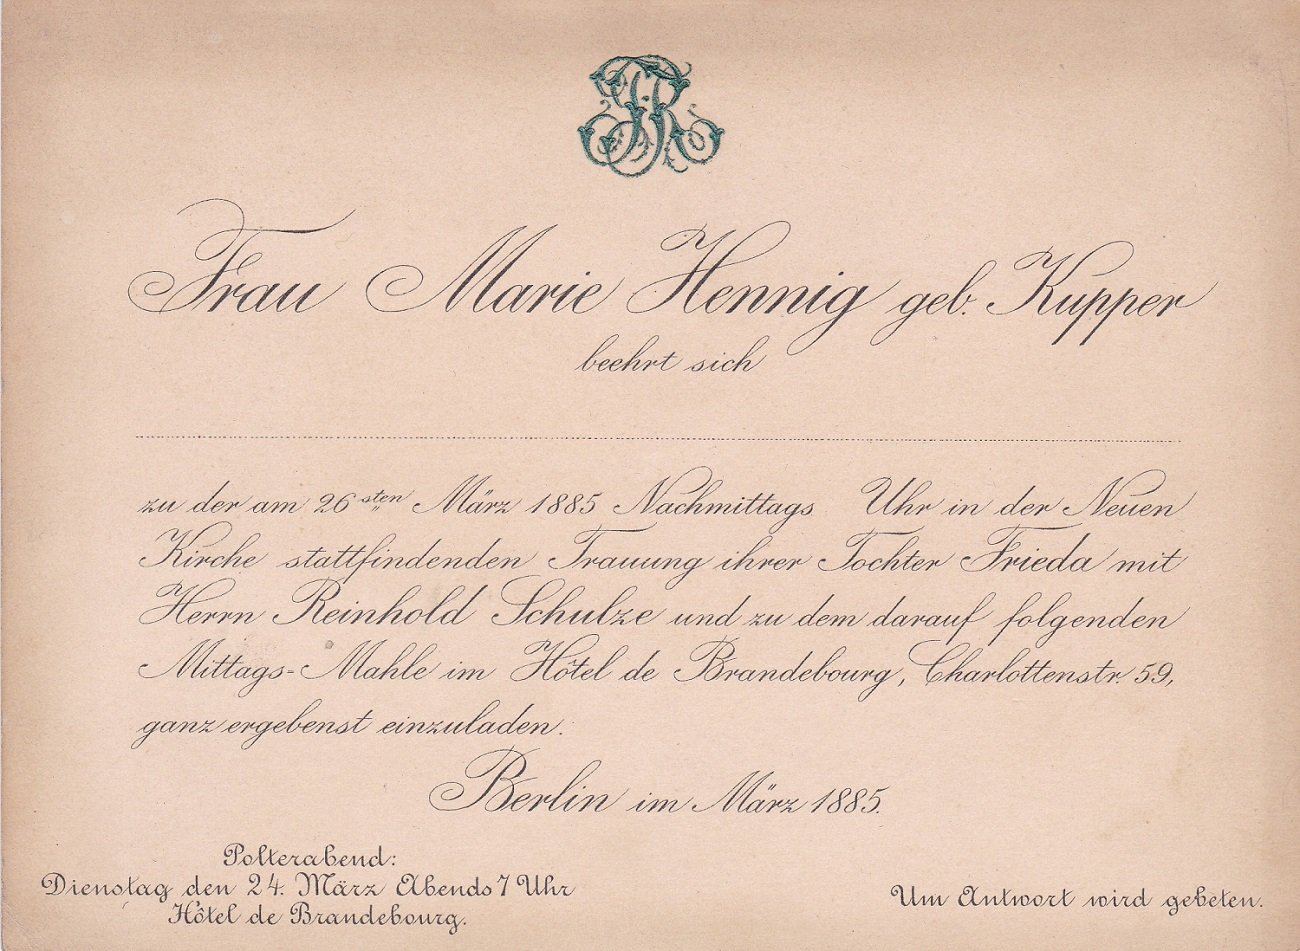   Einladung zu Hochzeit und Polterabend im einstigen Hotel de Brandebourg. Original-Einladungskarte zu Hochzeitsfeierlichkeiten im Frühjahr 1885. 